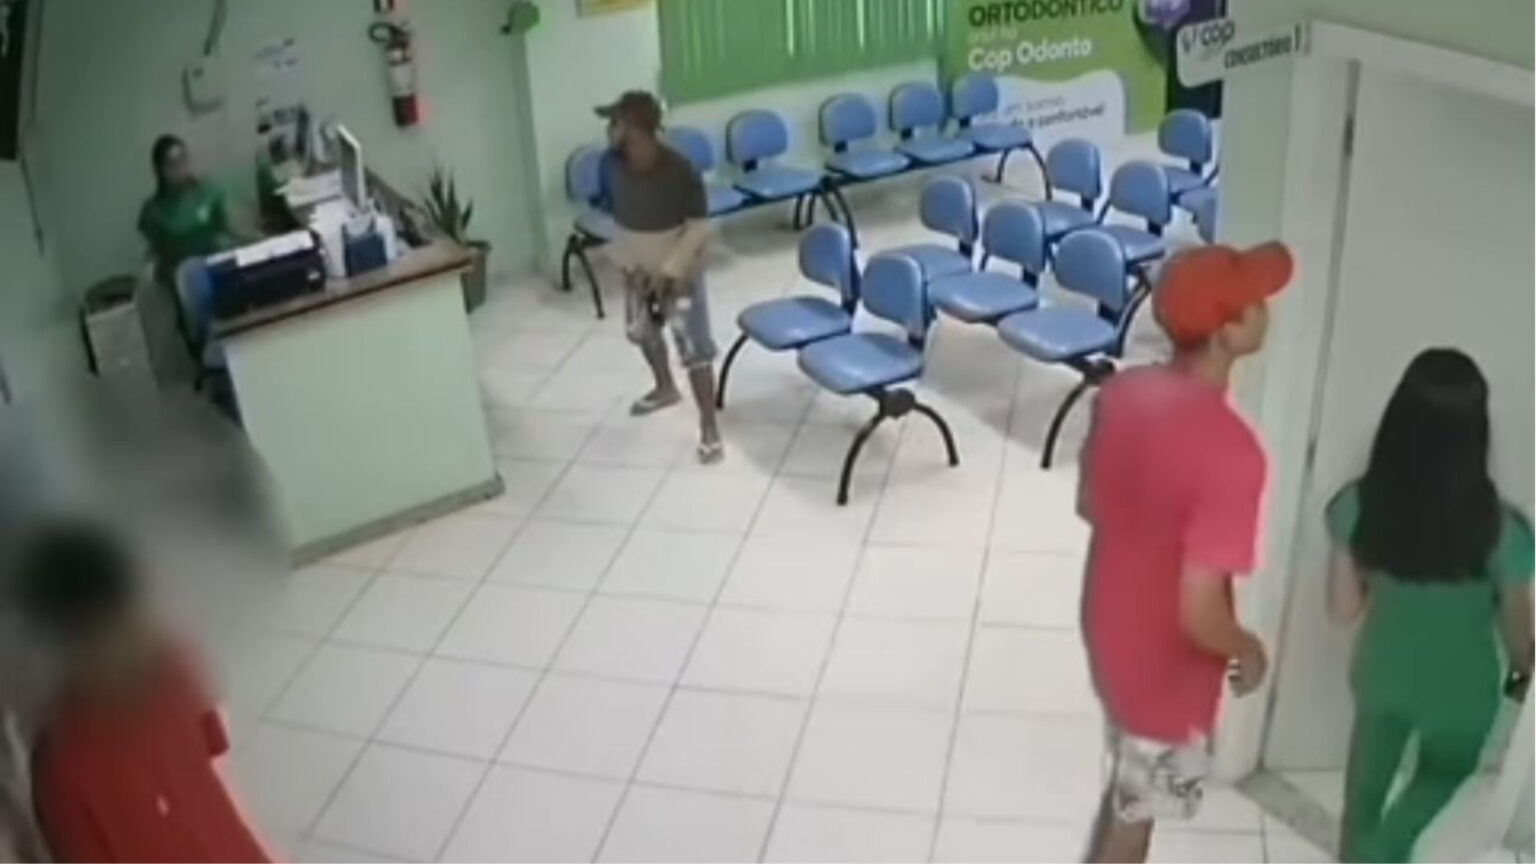 Armados, criminosos invadem e assaltam clínica médica no Pará